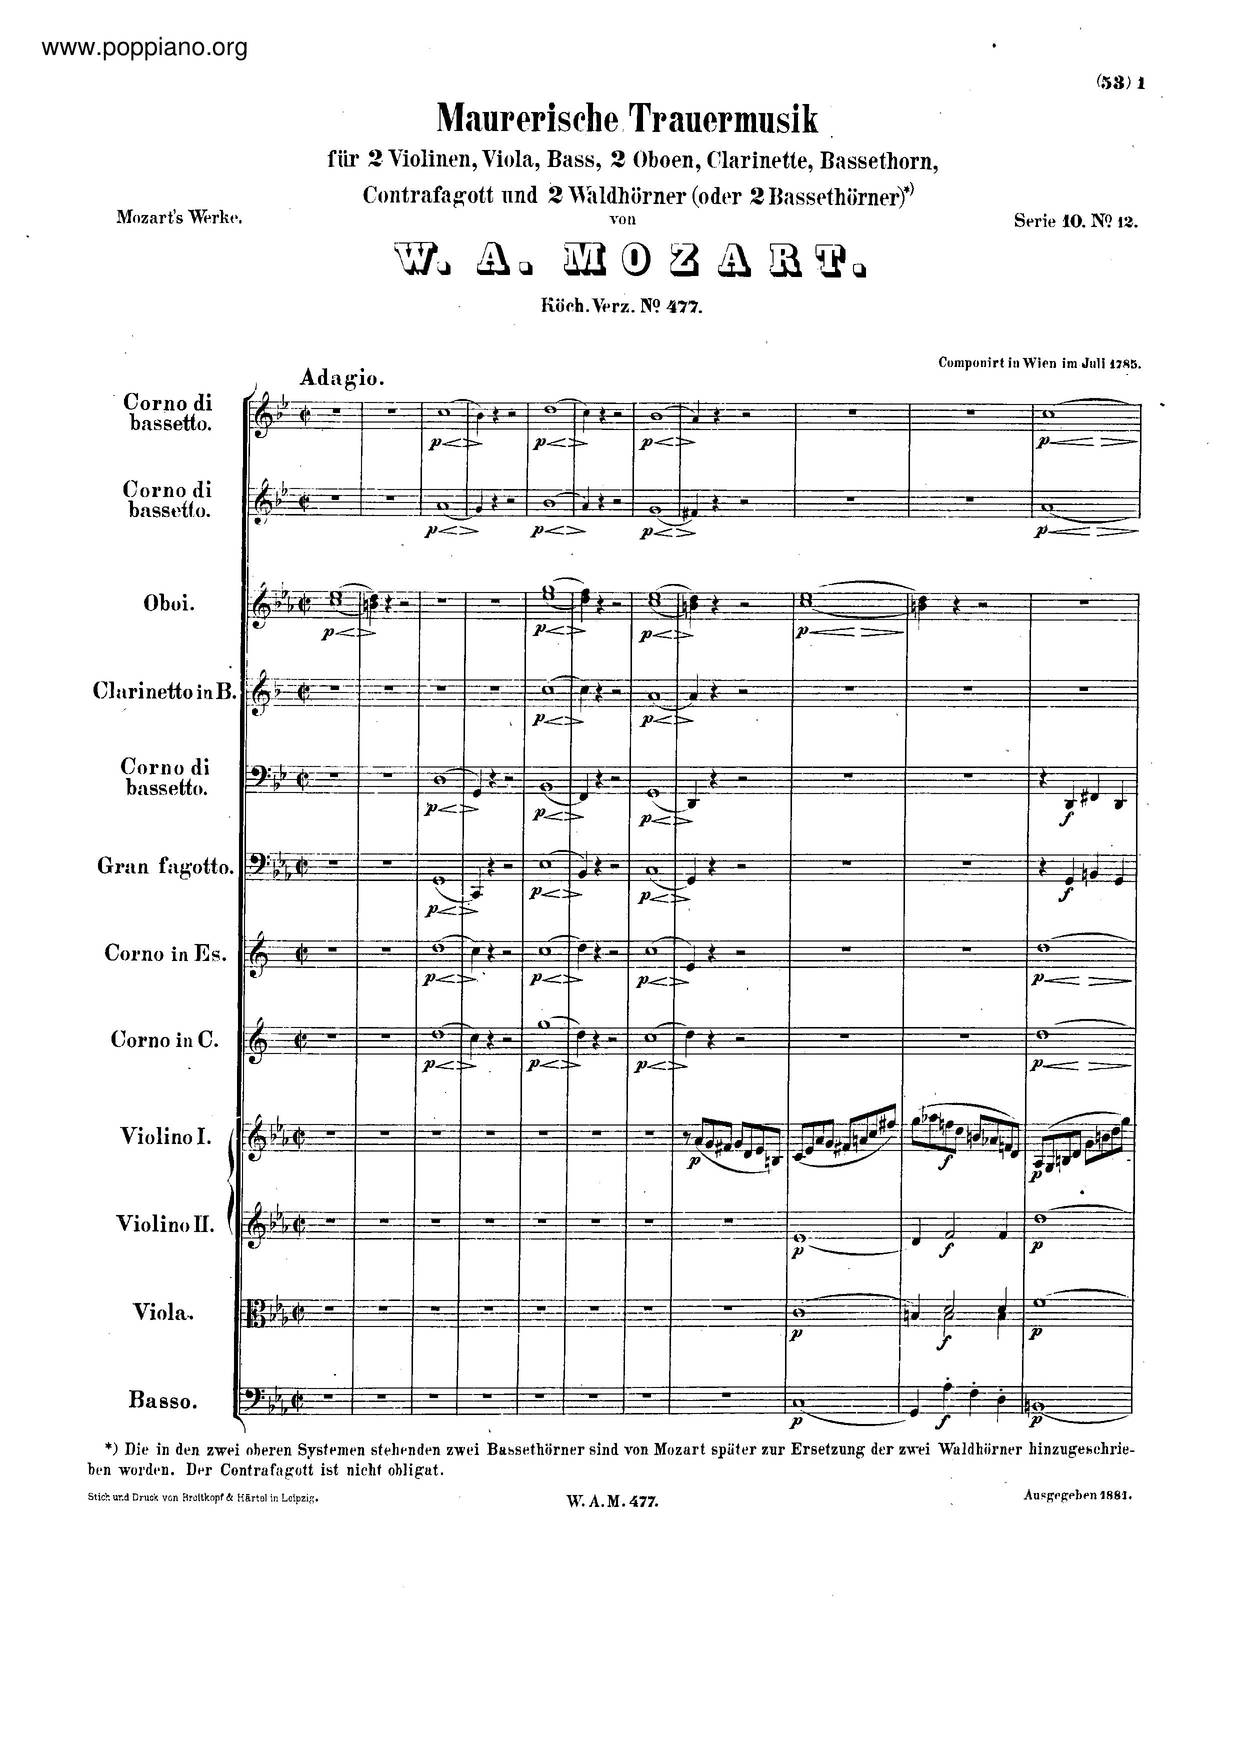 Maurerische Trauermusik, K. 477/479A琴谱